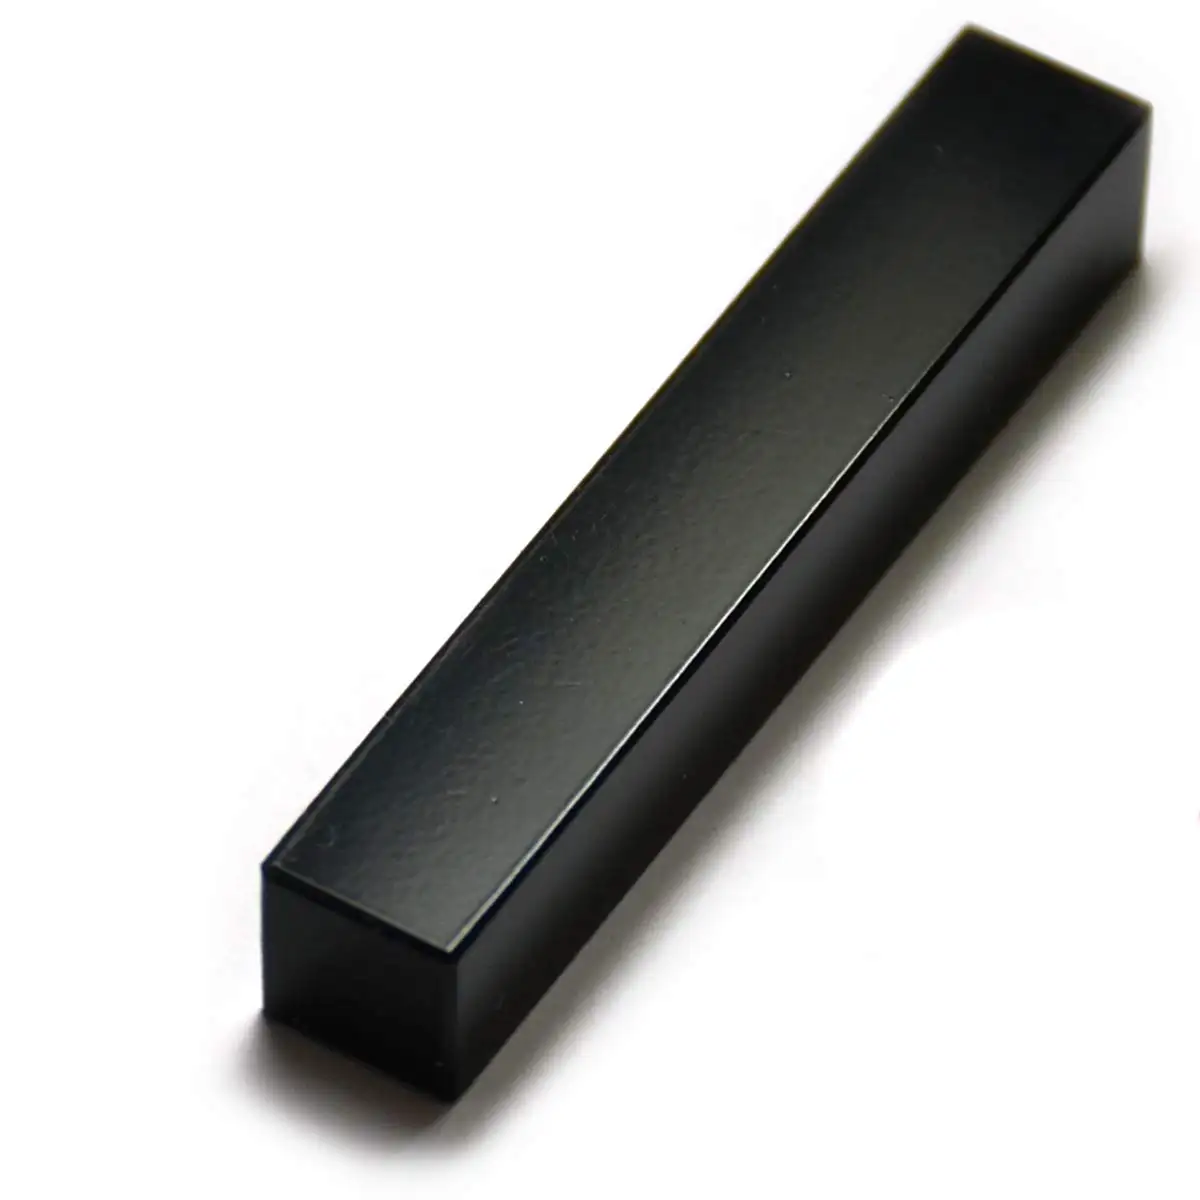 Magnete a barra ndfeb con rivestimento epossidico nero per portacoltelli magnetico fai-da-te